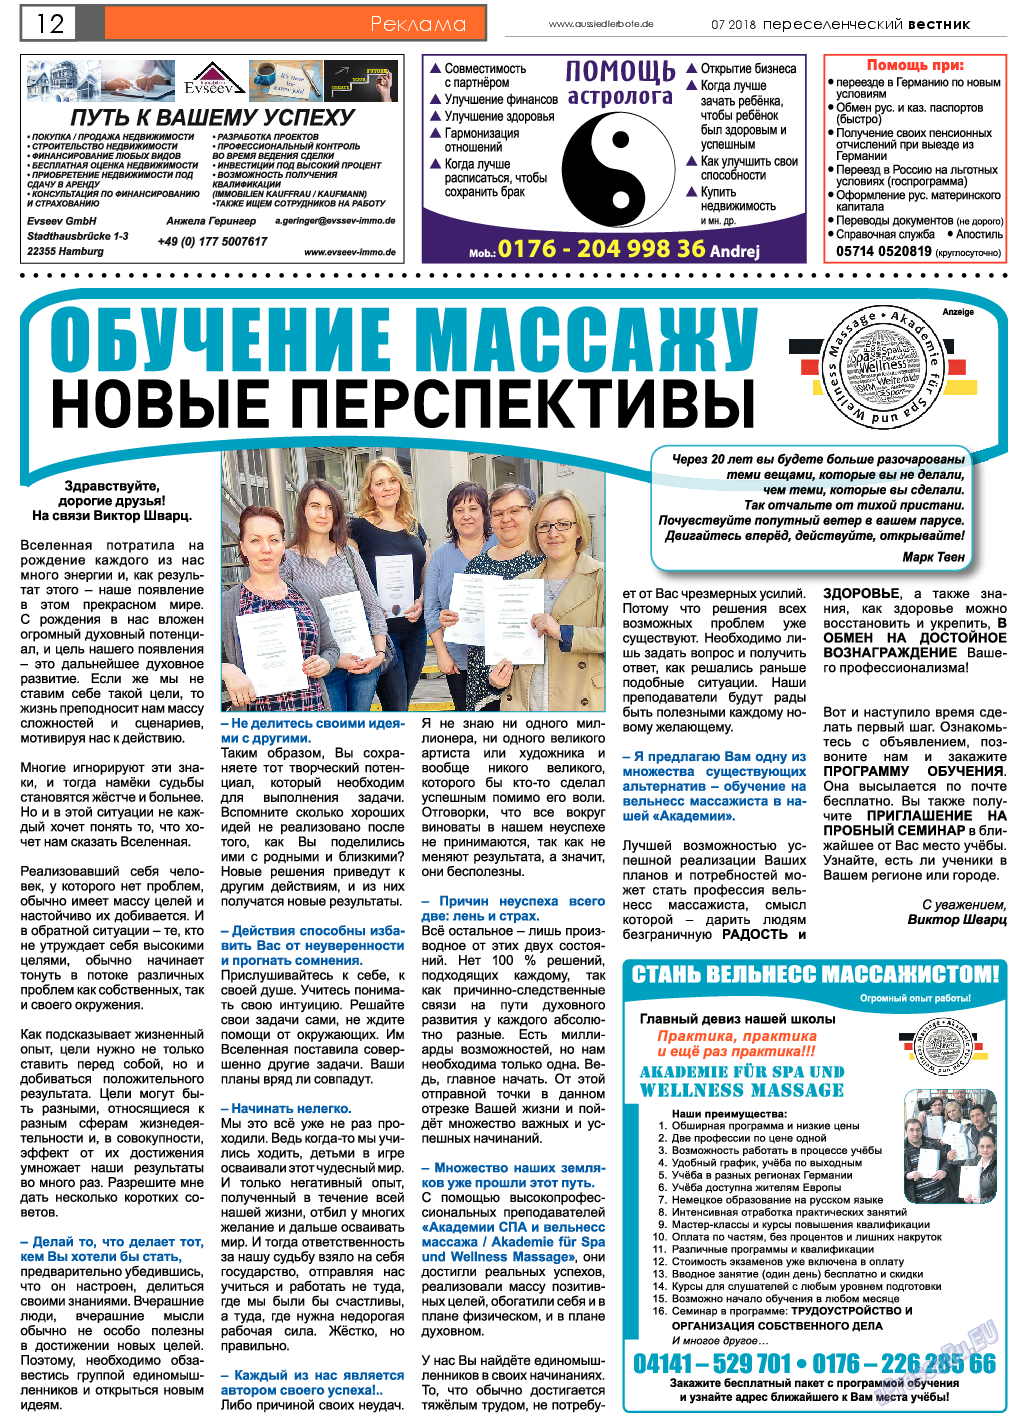 Переселенческий вестник, газета. 2018 №7 стр.12